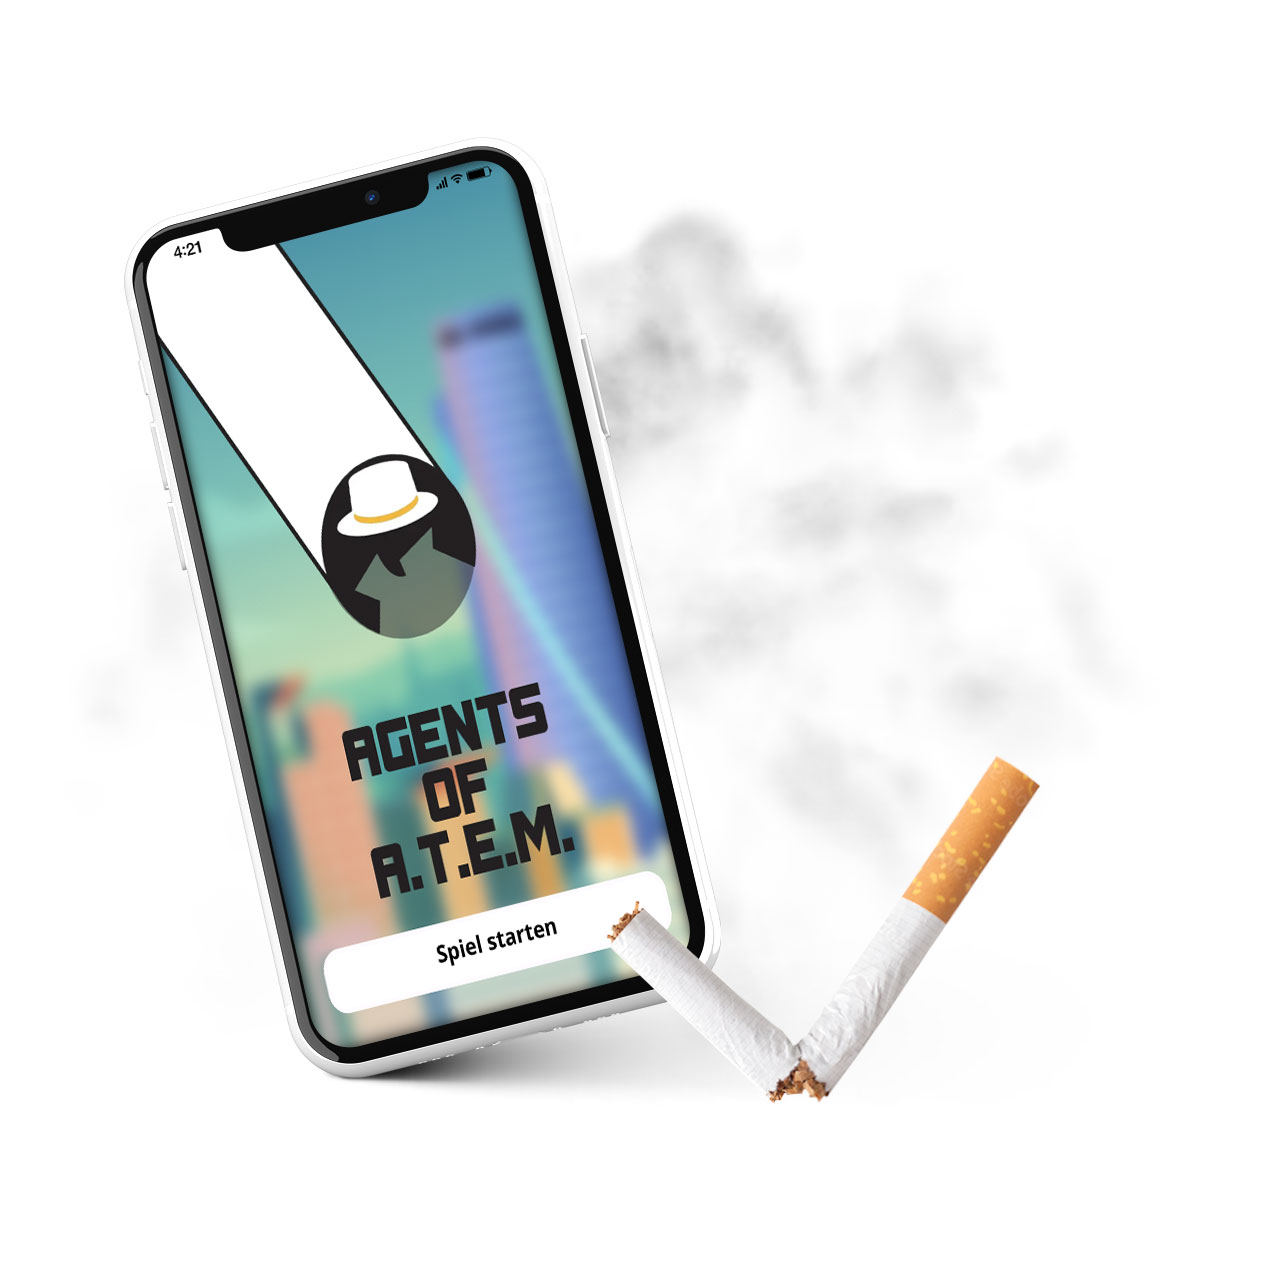 Web-App Agents of A.T.E.M. klärt spielerisch über Gefahren von Tabakkonsum auf